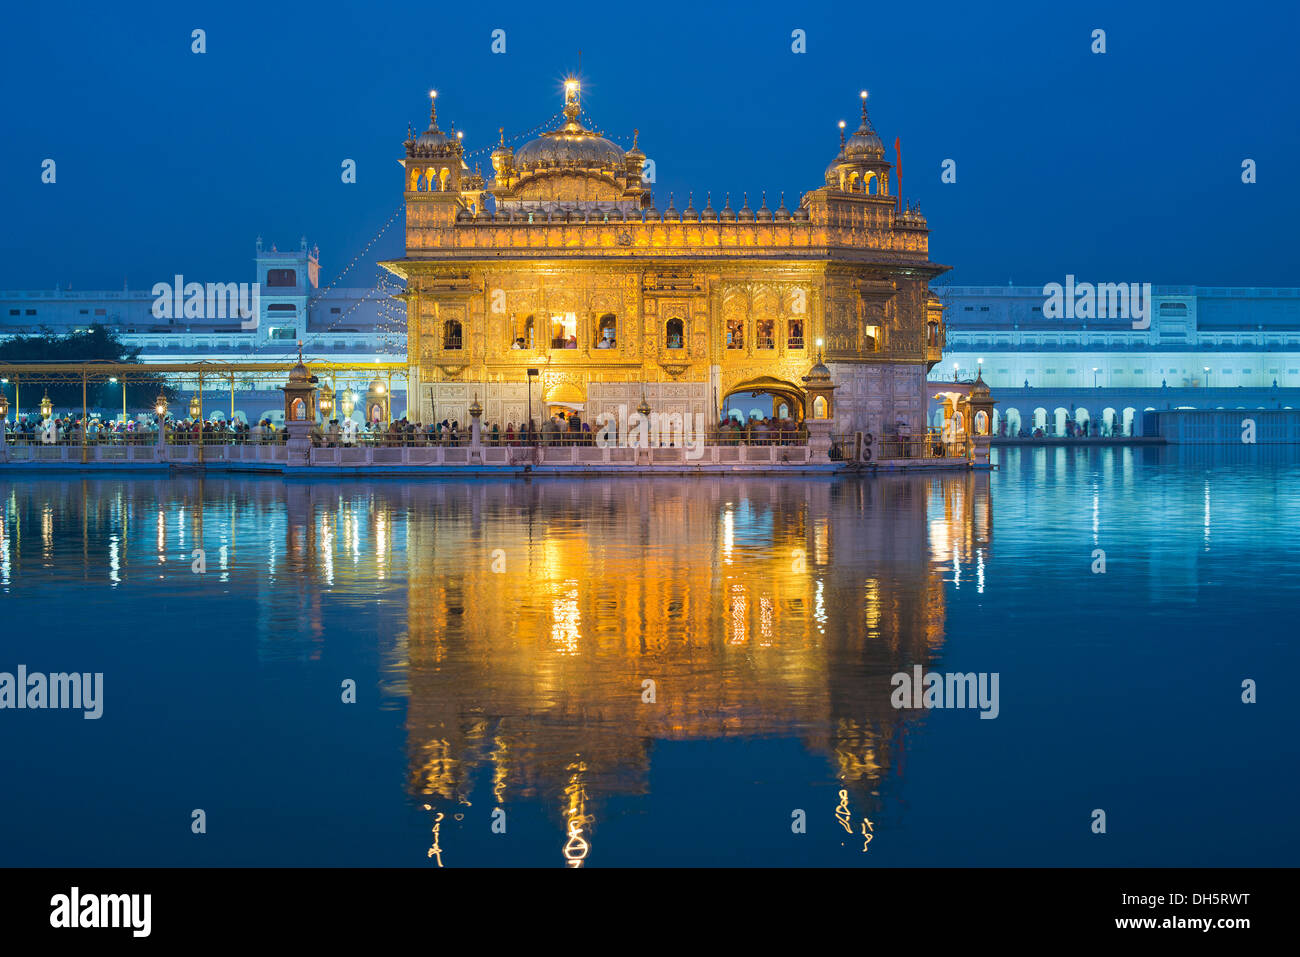 Die Harmandir Sahib oder Darbar Sahib, goldenen Tempel, das Hauptheiligtum der Sikhs, mit dem Heiligen Amrit Sagar See in der Abenddämmerung Stockfoto